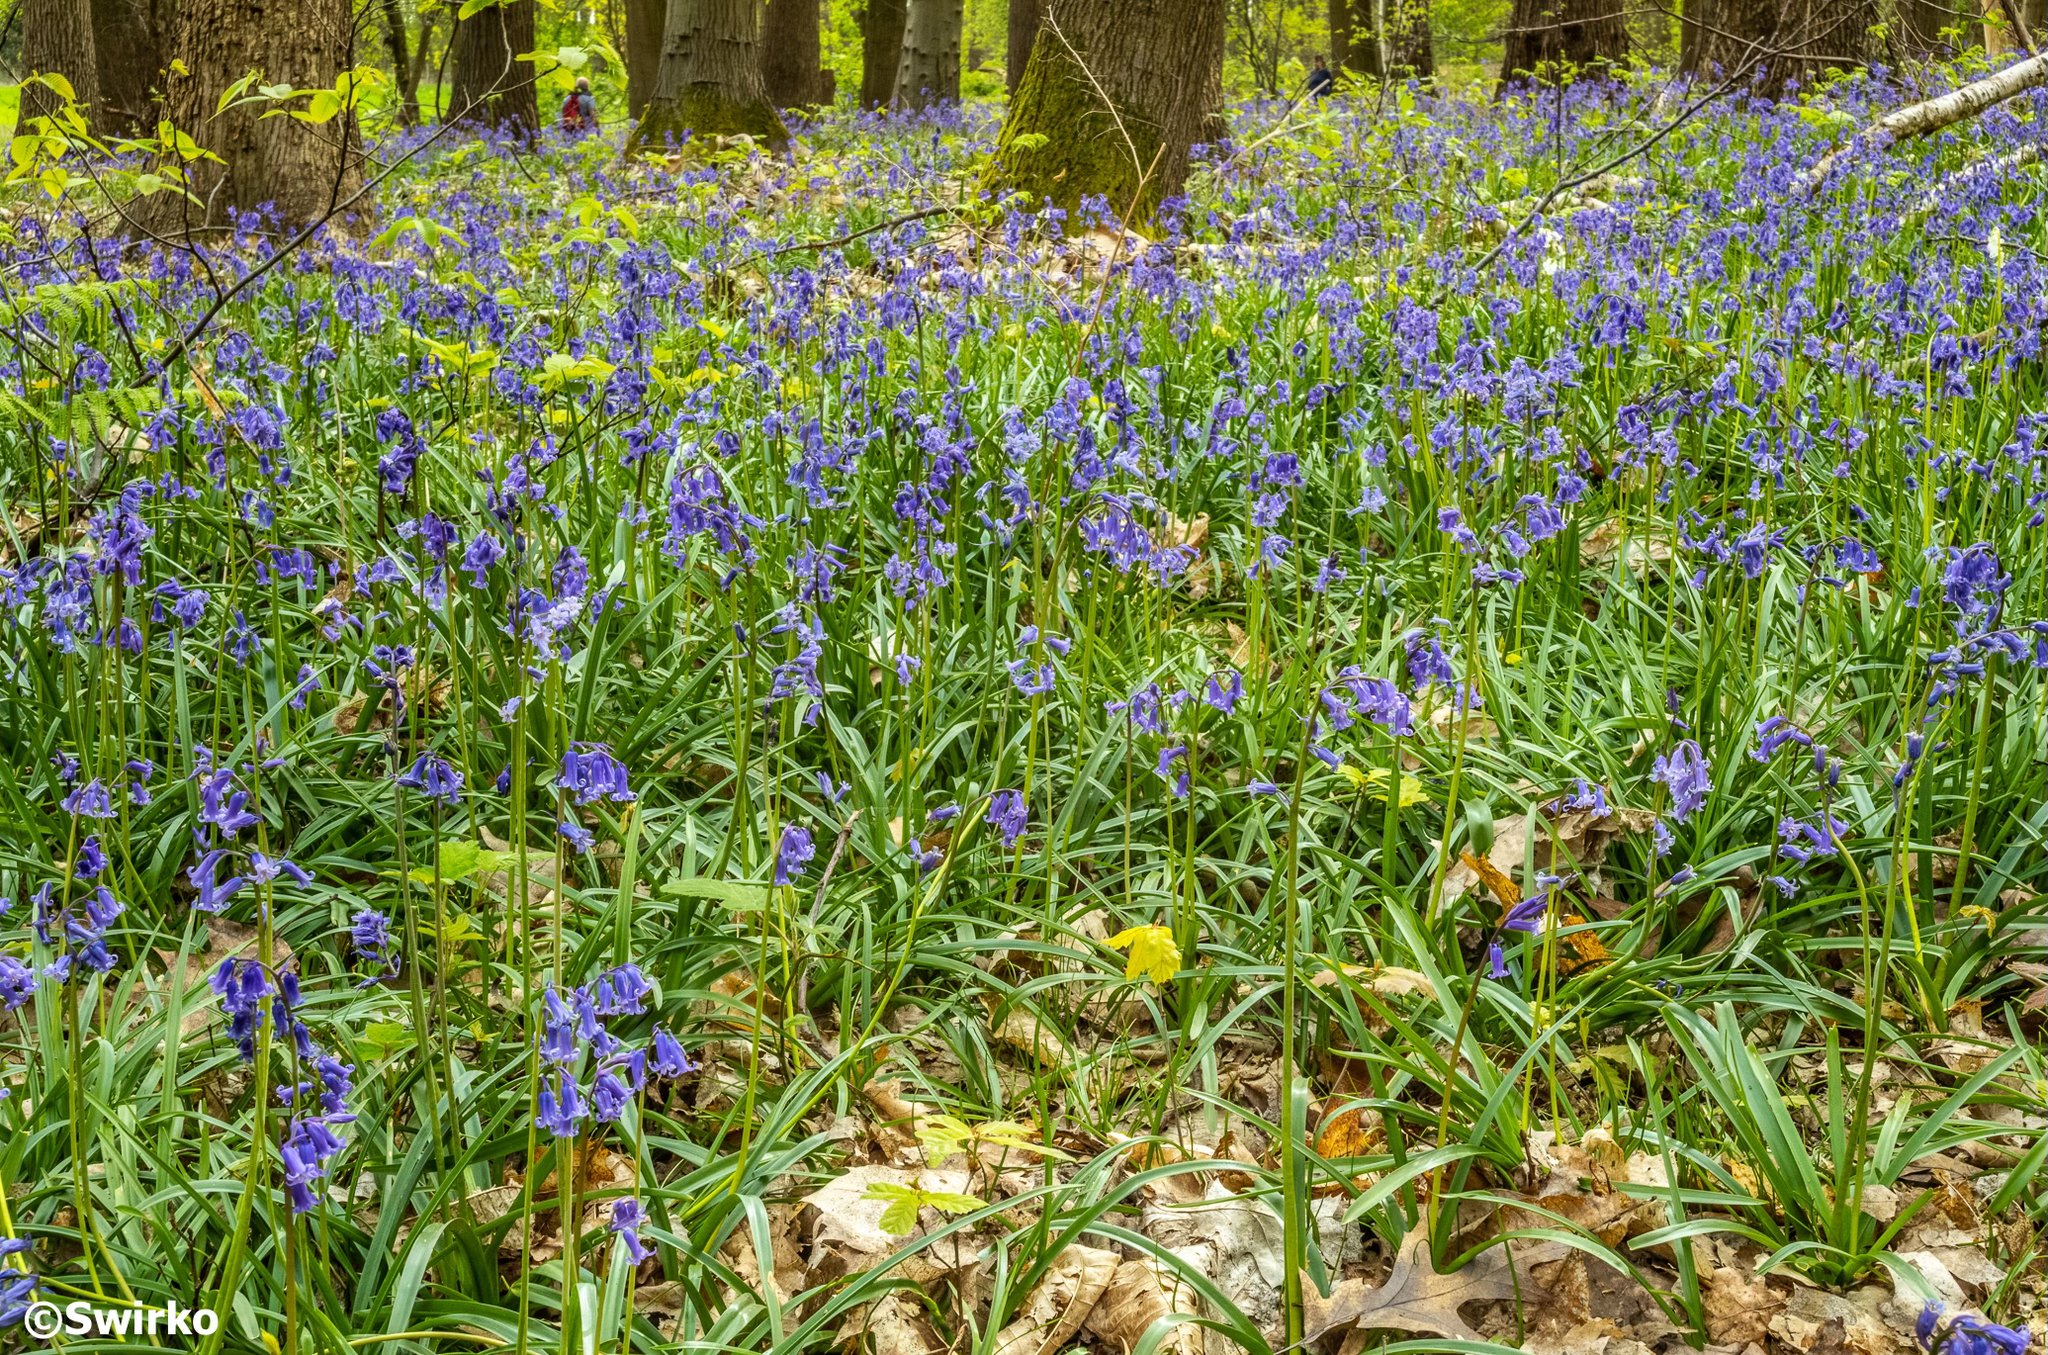 Eind april, begin mei trekken heel wat bossen hun mooiste lentejurk aan. Dan bloeien de paarsblauwe boshyacinten, met oogstrelende taferelen als gevolg. 